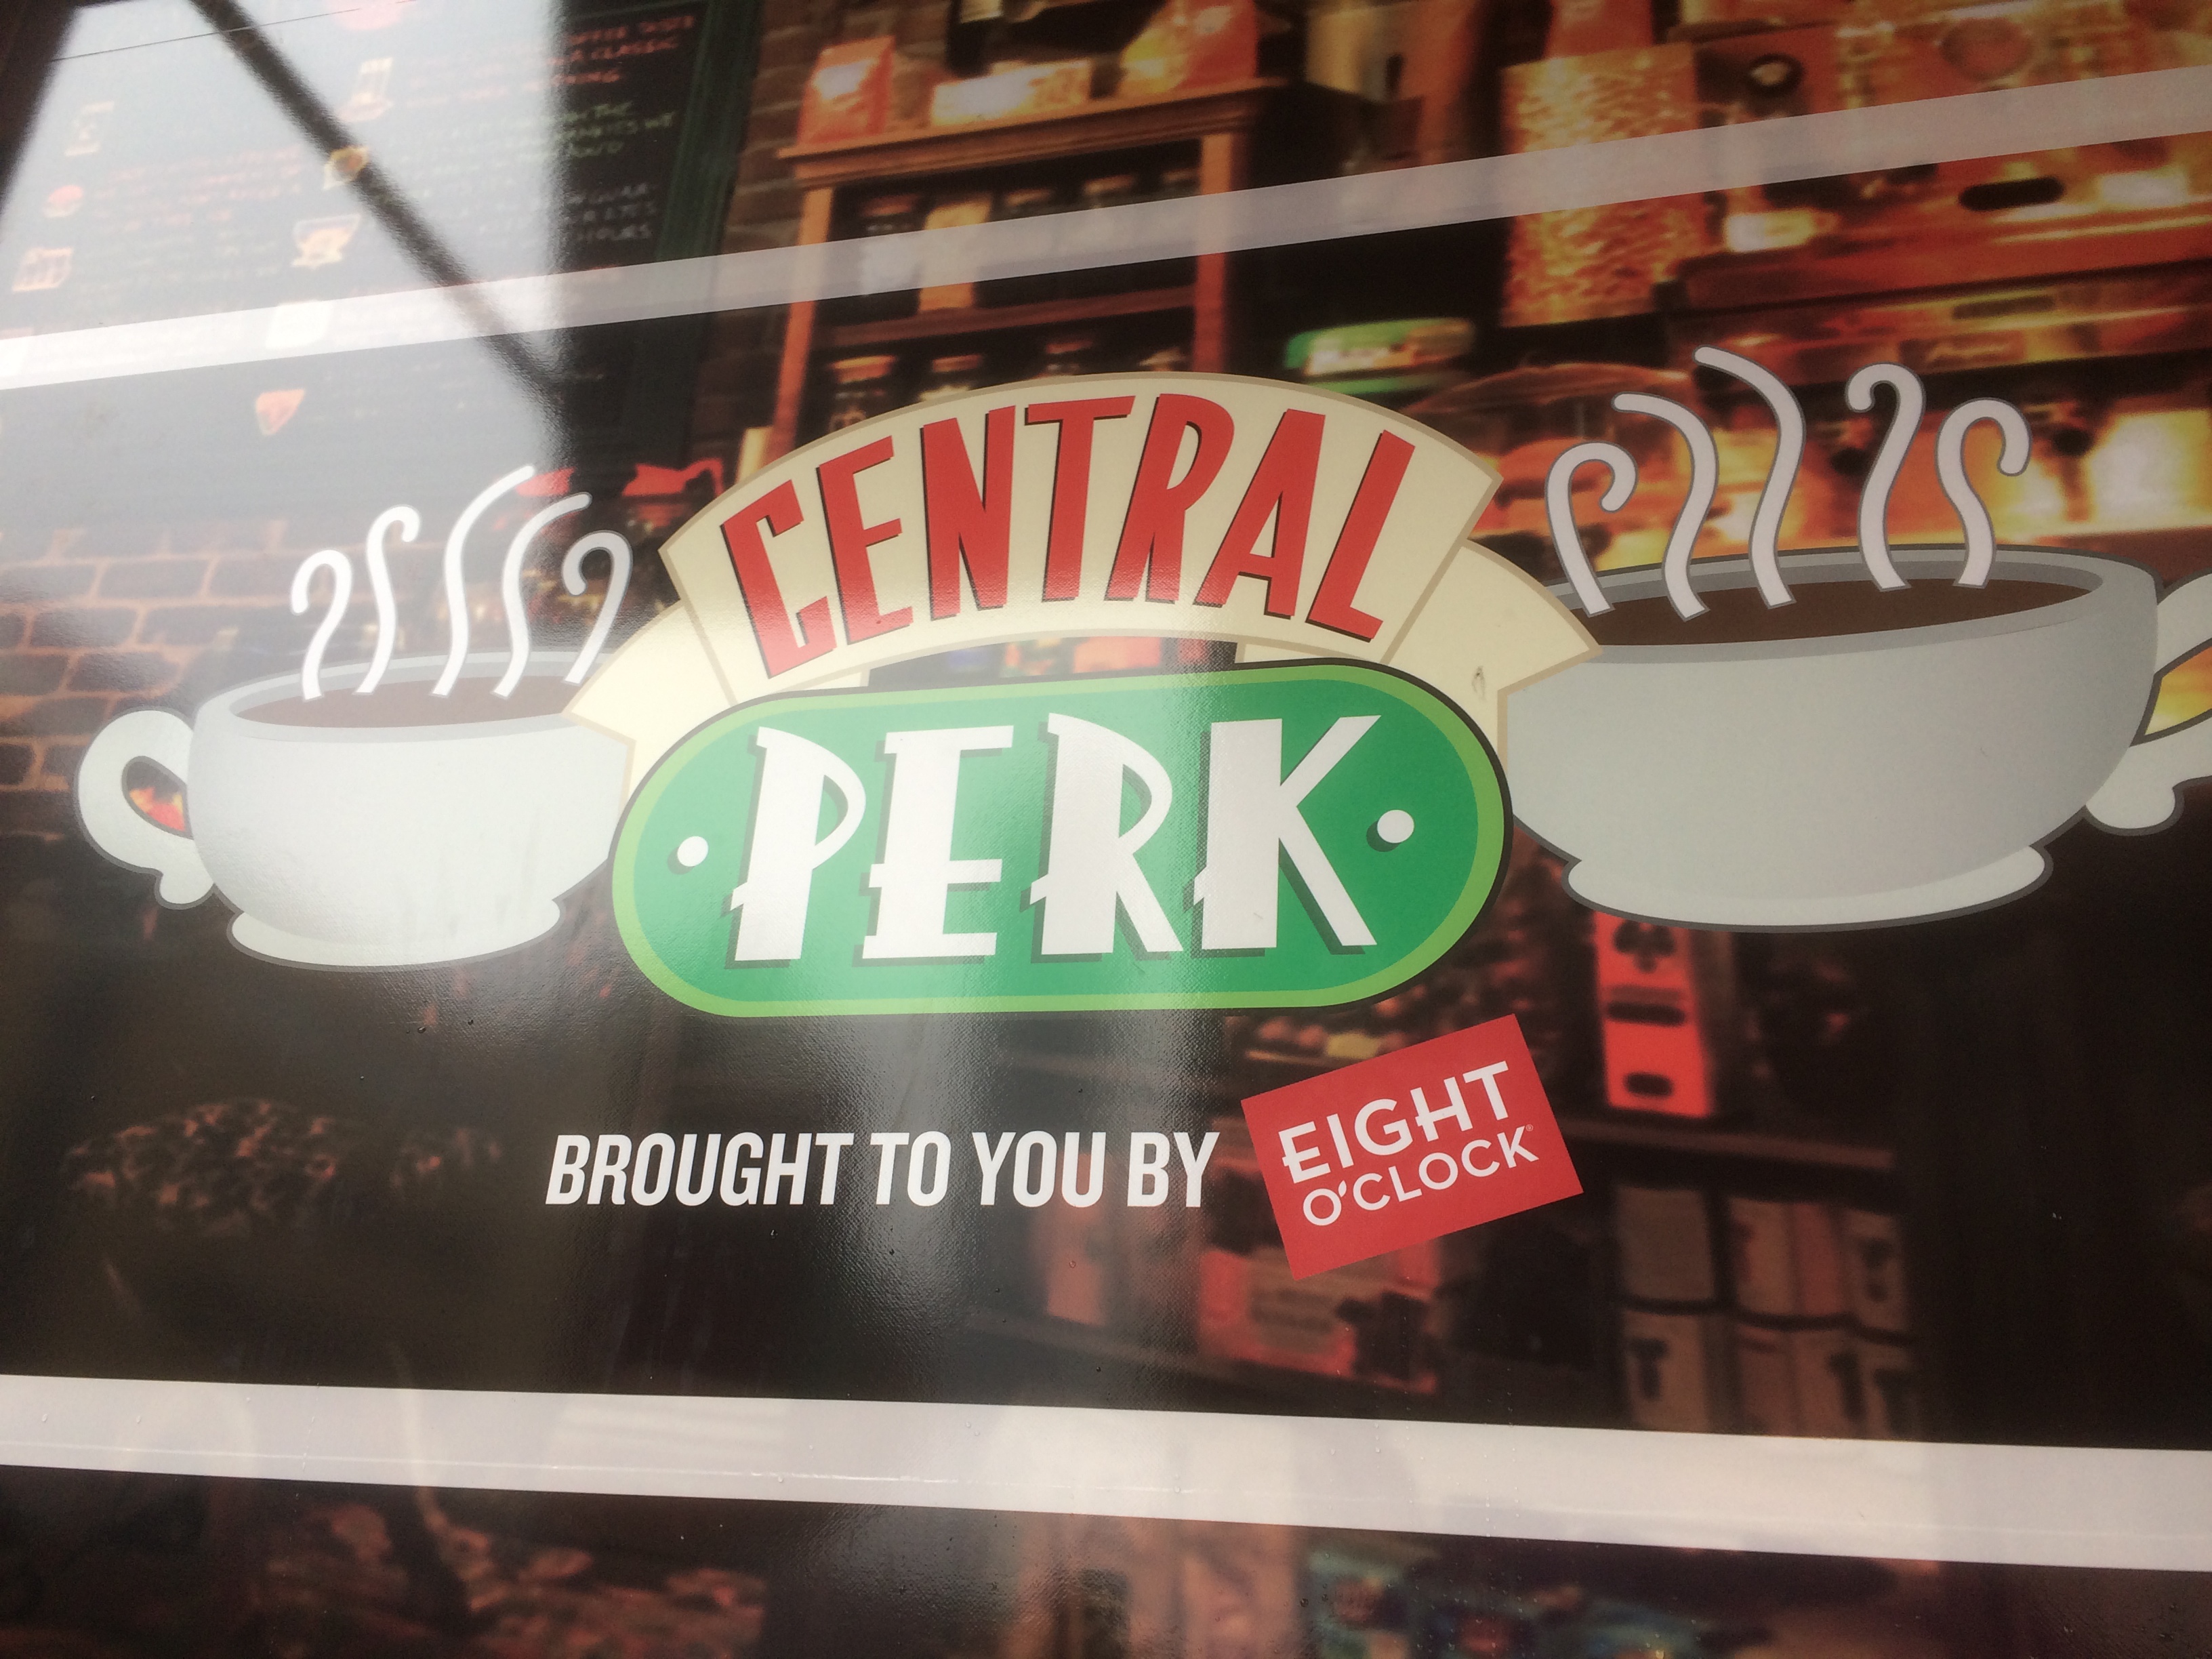 Central-Perk